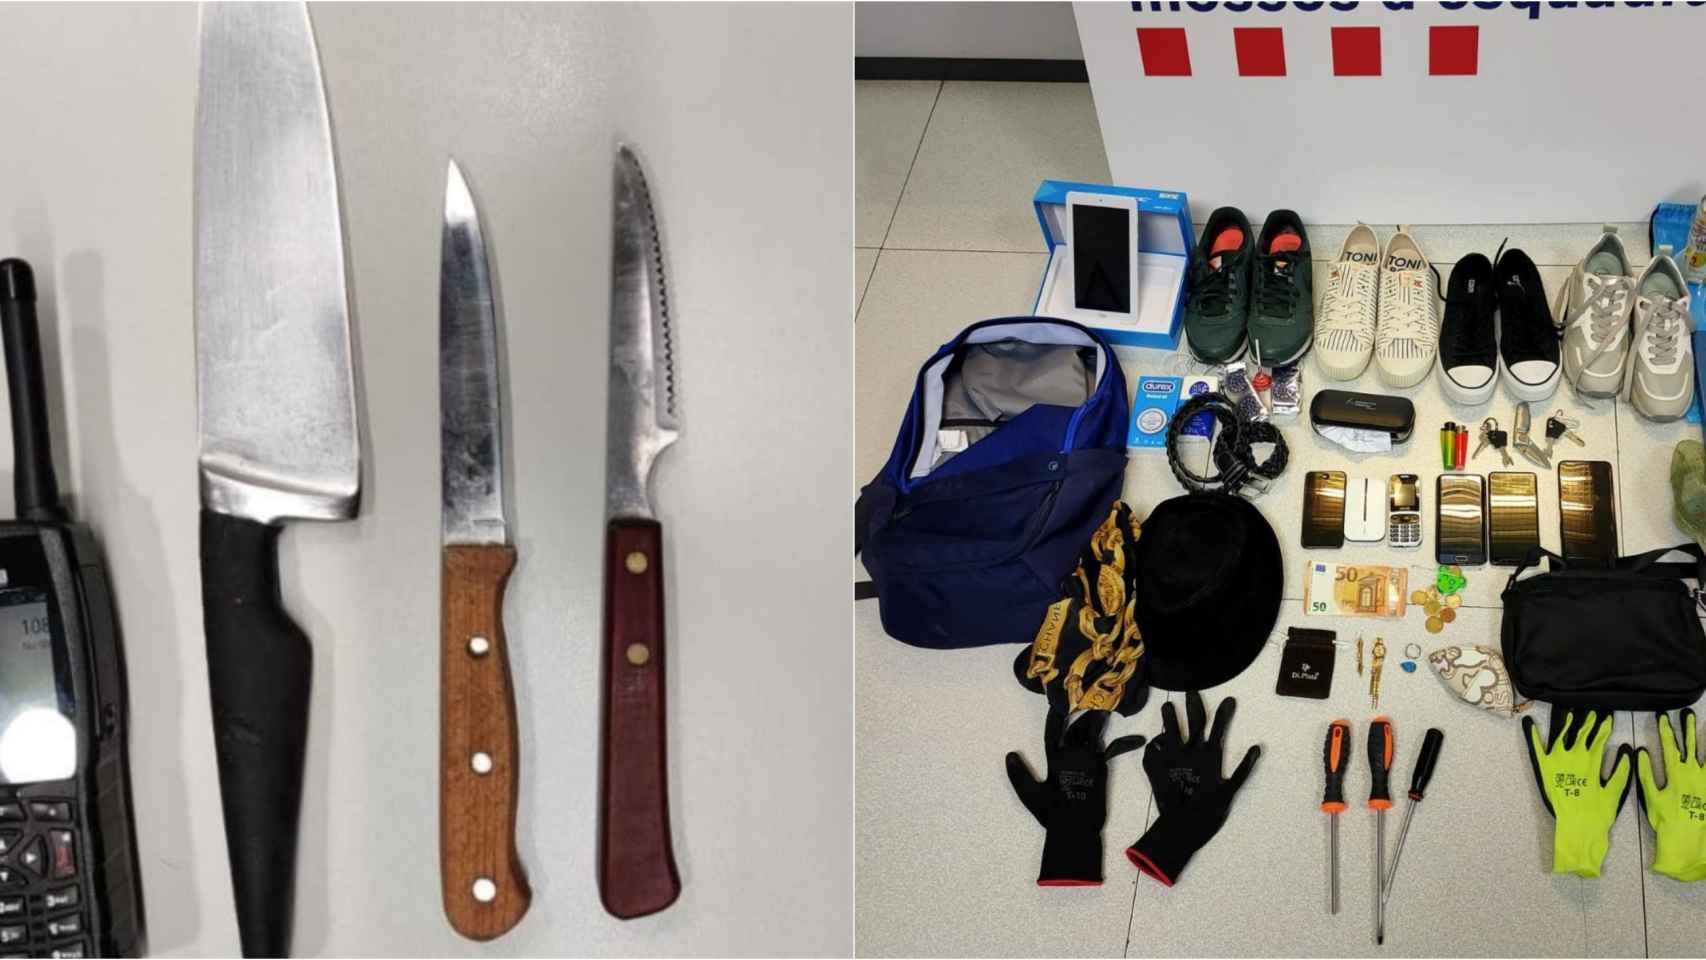 Cuchillos y demás material incautado por la policía catalana / MOSSOS D'ESQUADRA